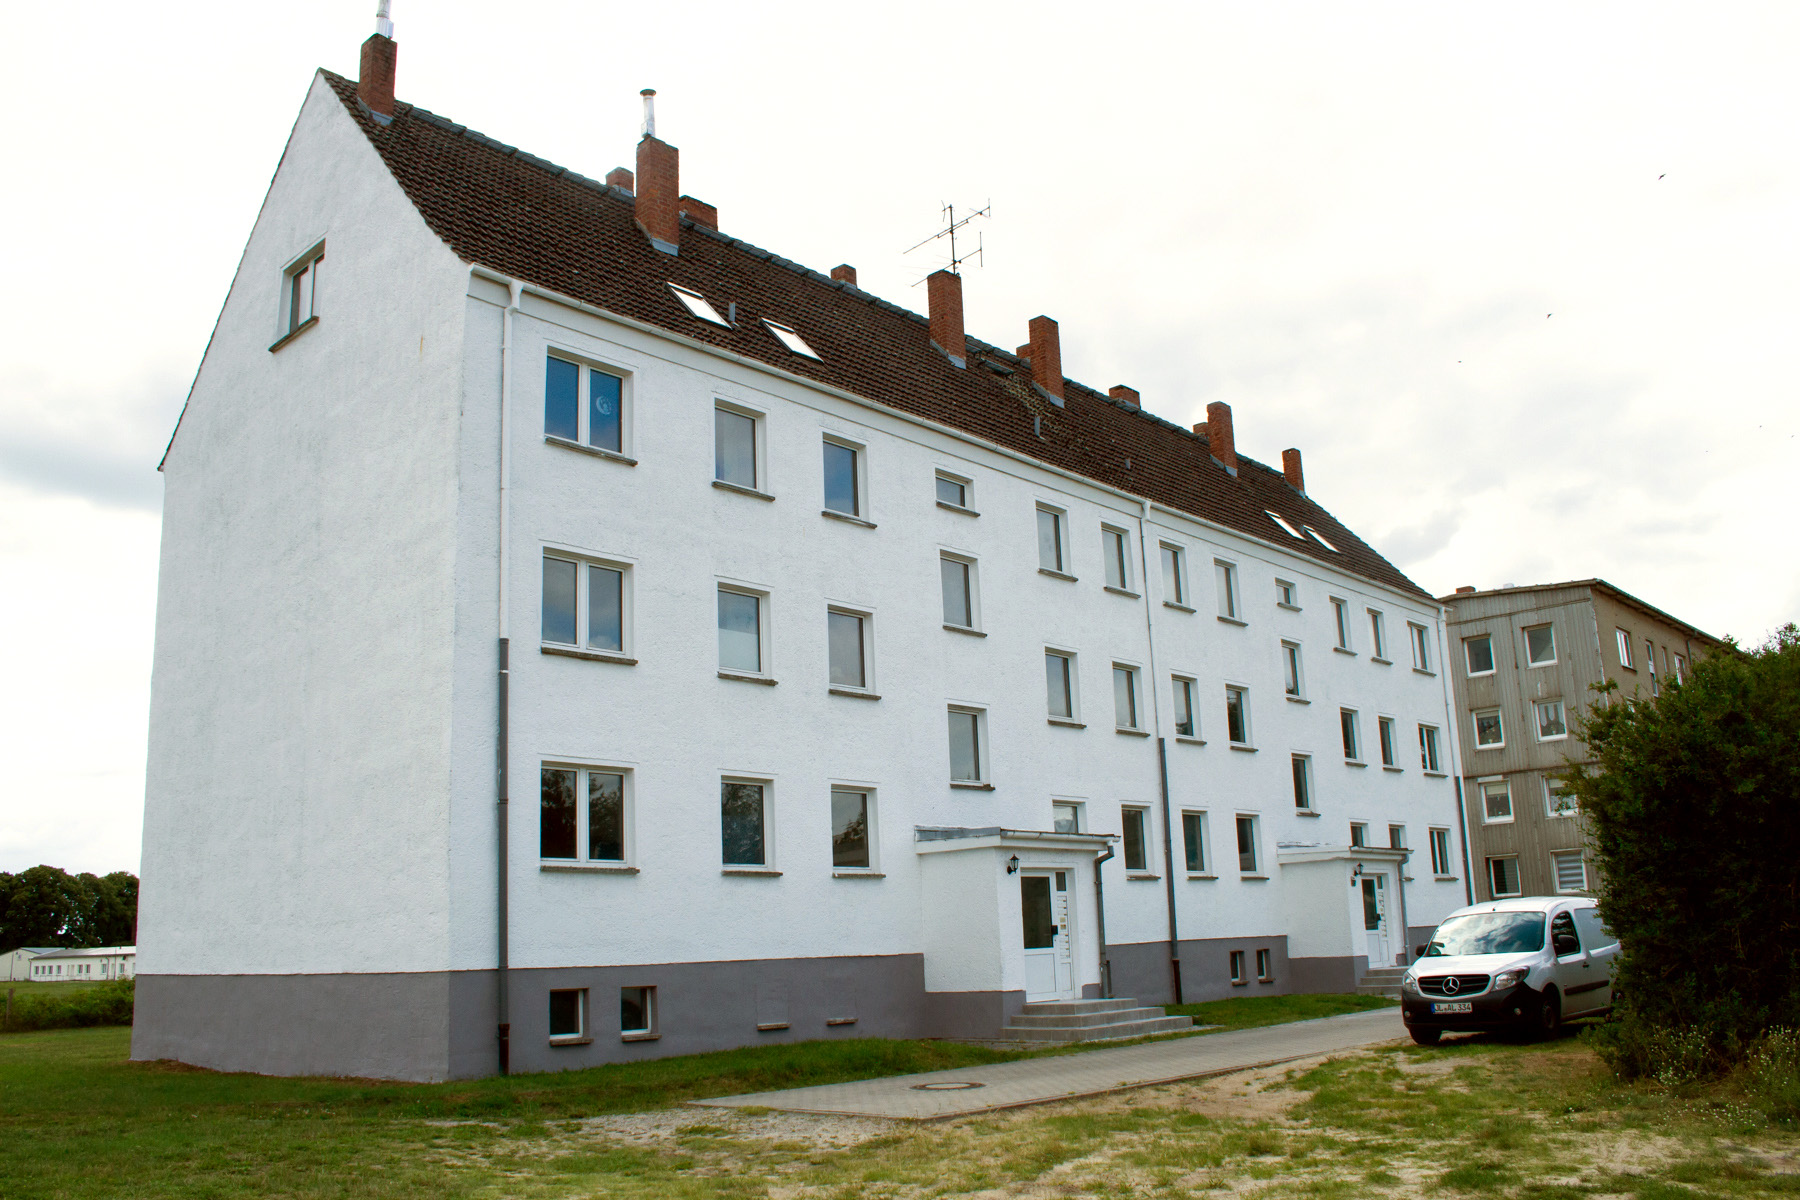 Mehrfamilienhaus 14 Wohnungen nahe Ostsee